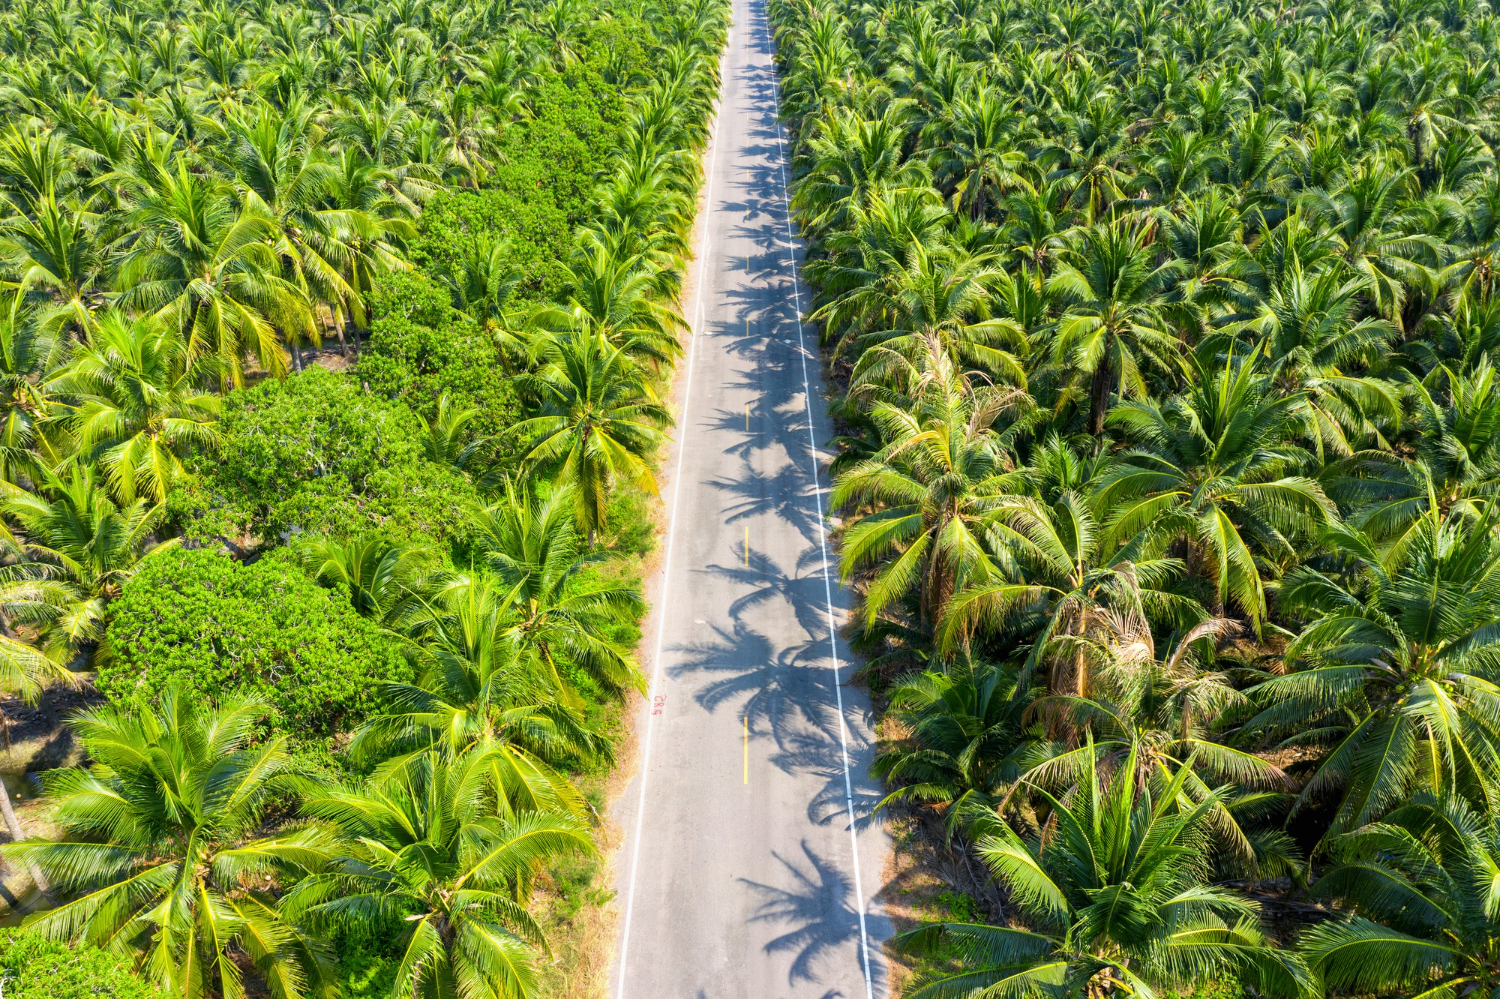 Konsumenci kojarzą olej palmowy głównie z degradacją środowiska. Niewiele wiedzą o jego certyfikacji